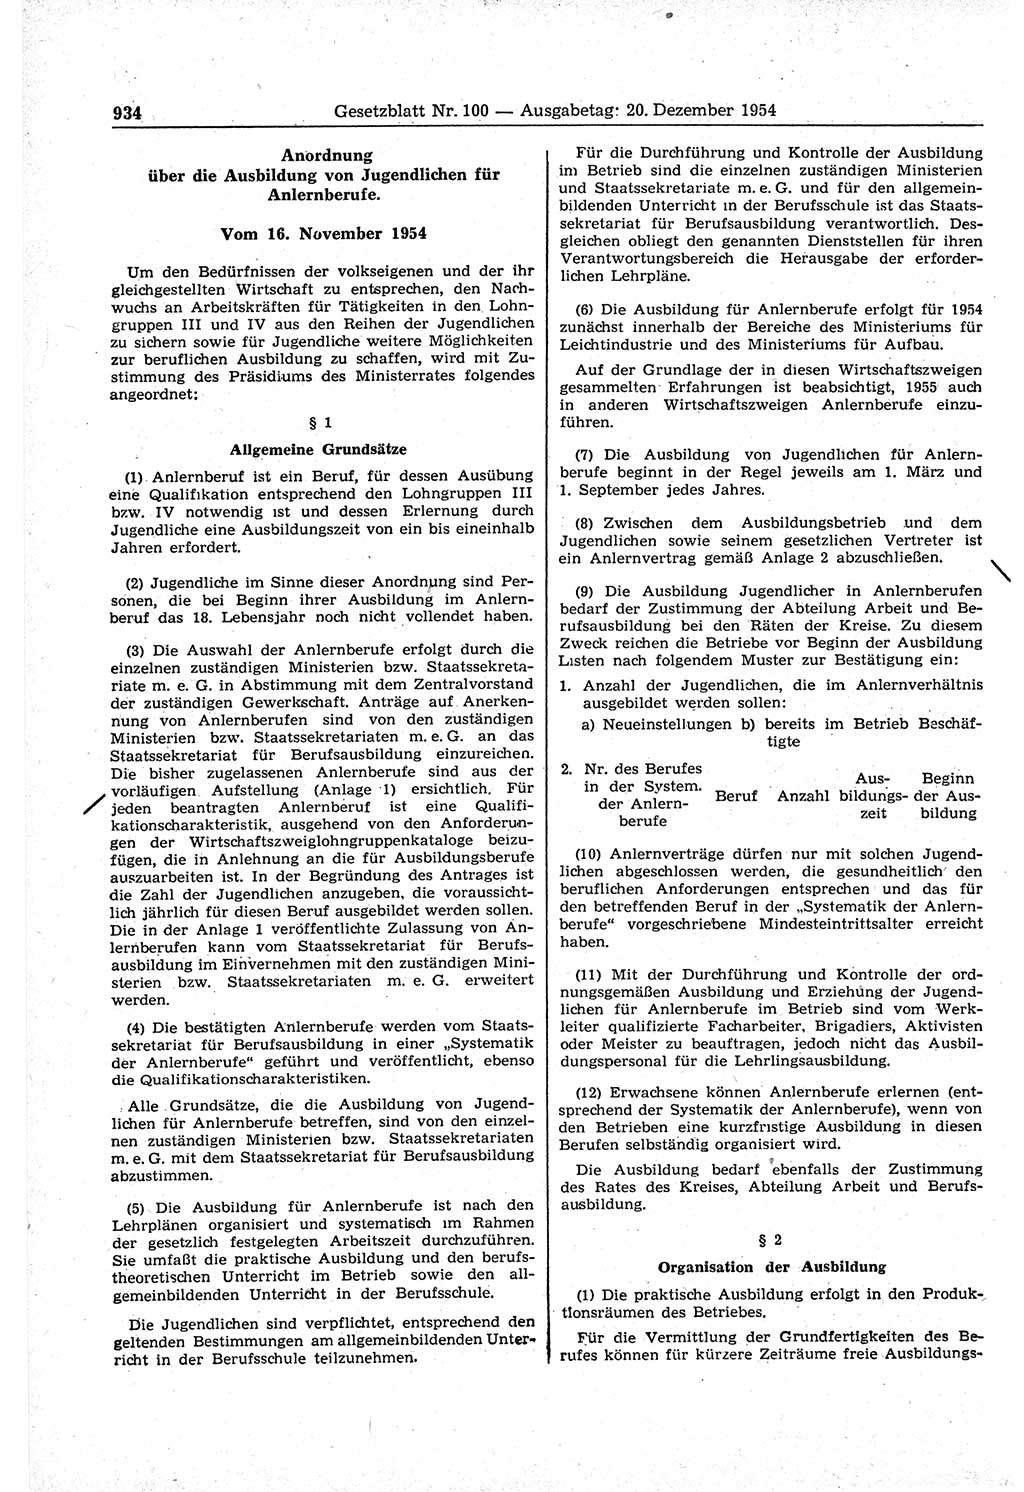 Gesetzblatt (GBl.) der Deutschen Demokratischen Republik (DDR) 1954, Seite 934 (GBl. DDR 1954, S. 934)